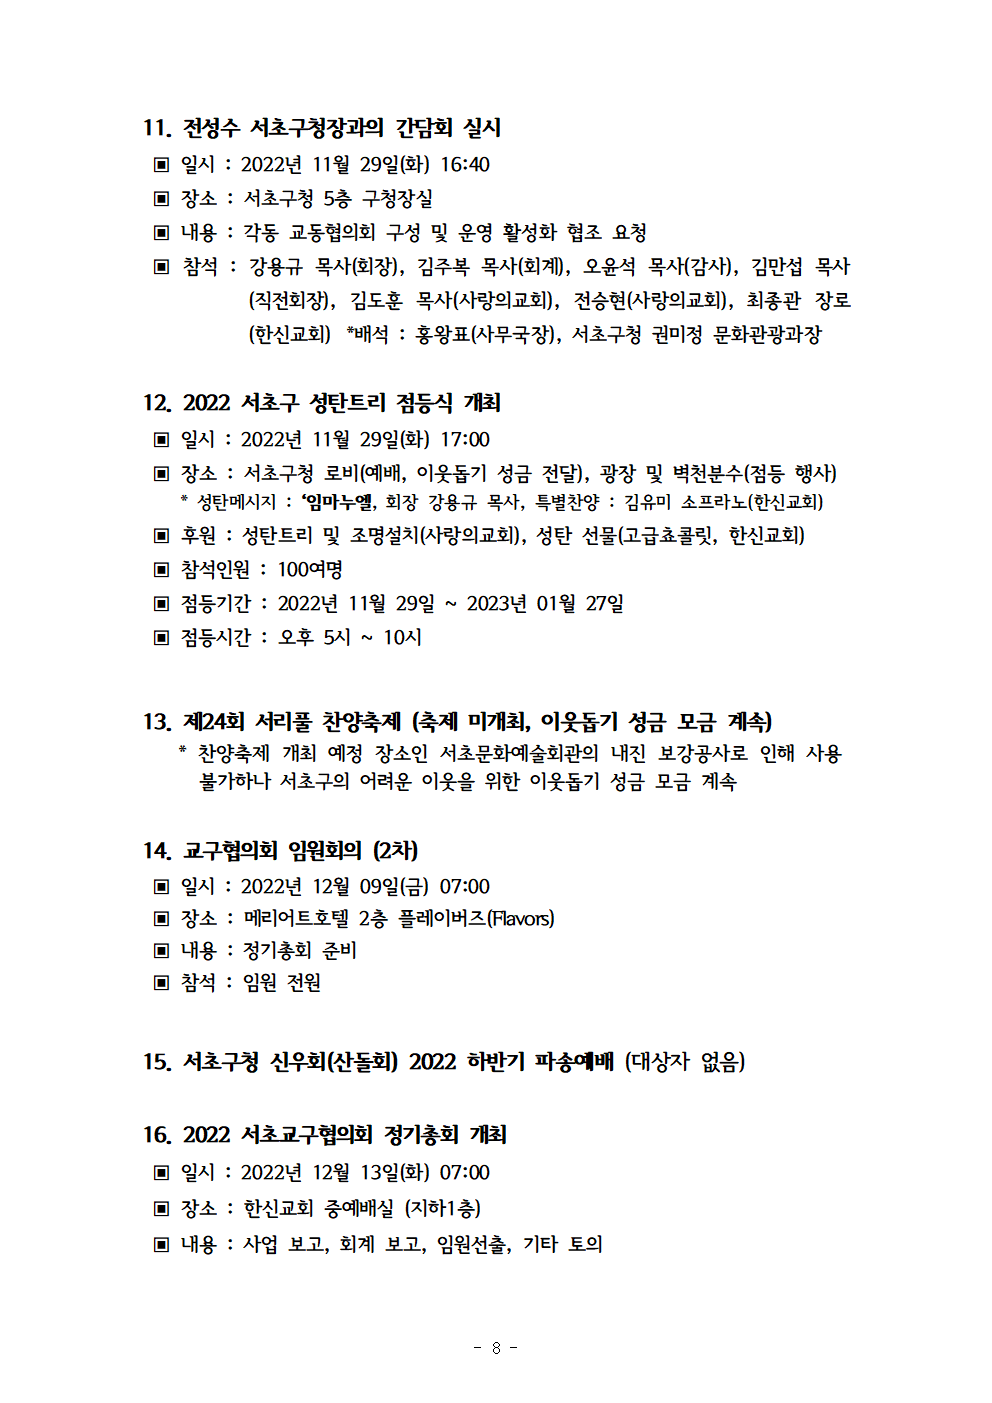 2022회기 서초교구협의회 정기총회자료(12.13.)_홈페이지009.png